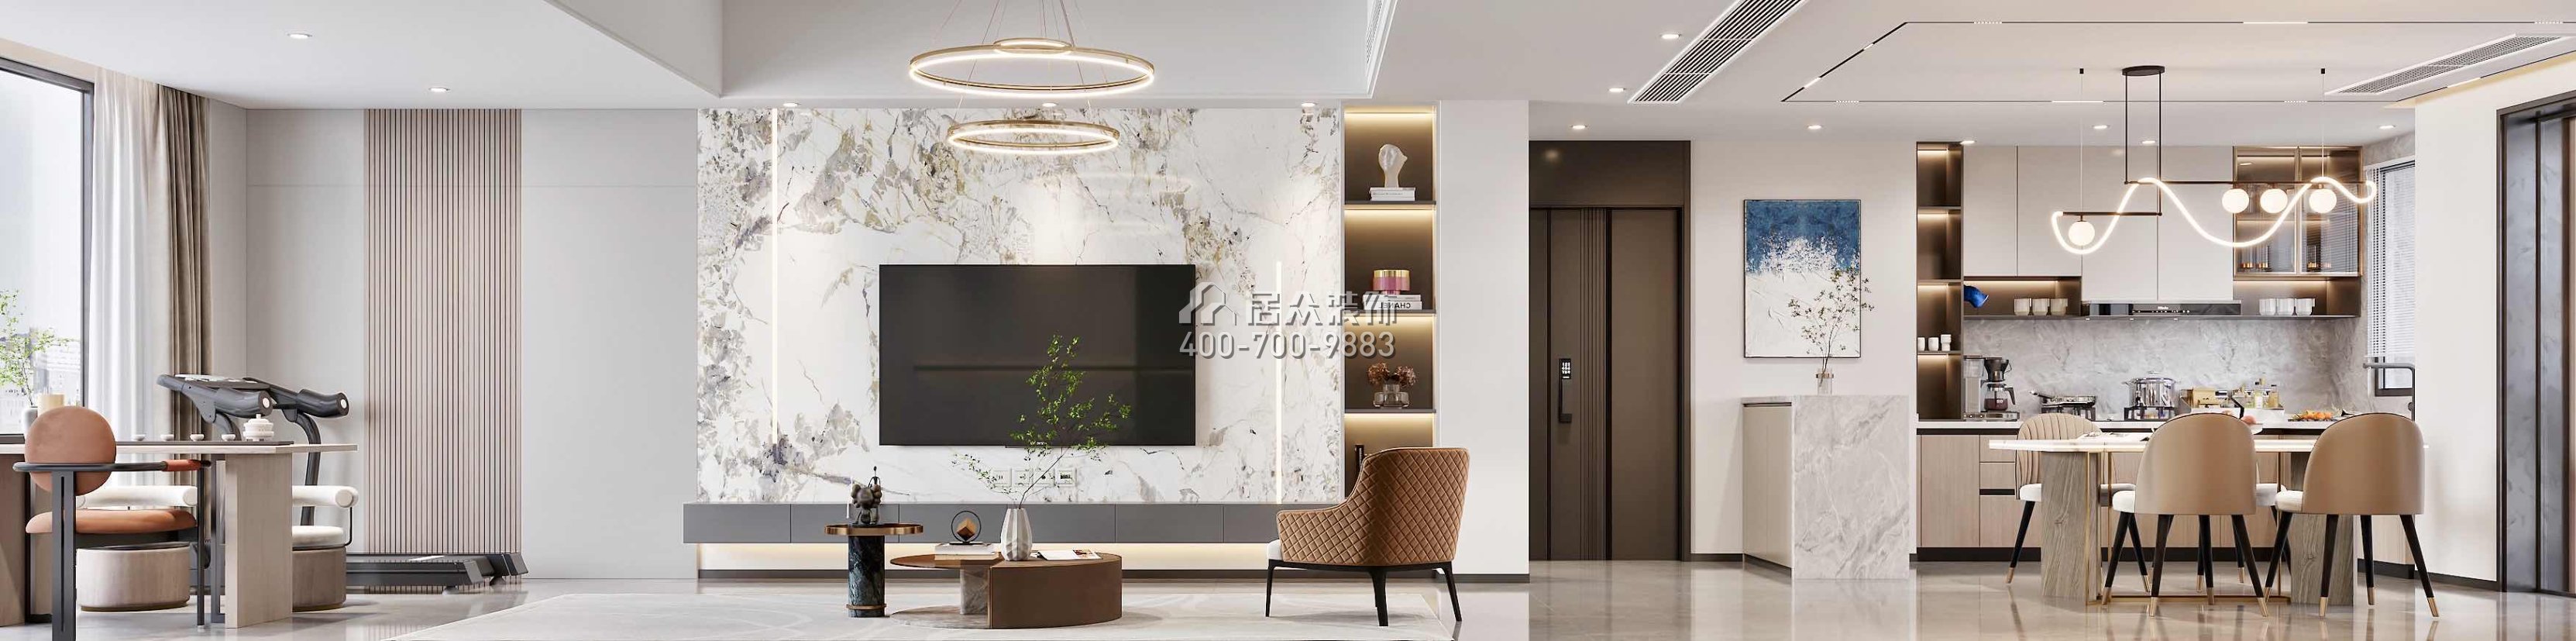 翠湖香山150平方米现代简约风格平层户型客厅kok电竞平台效果图